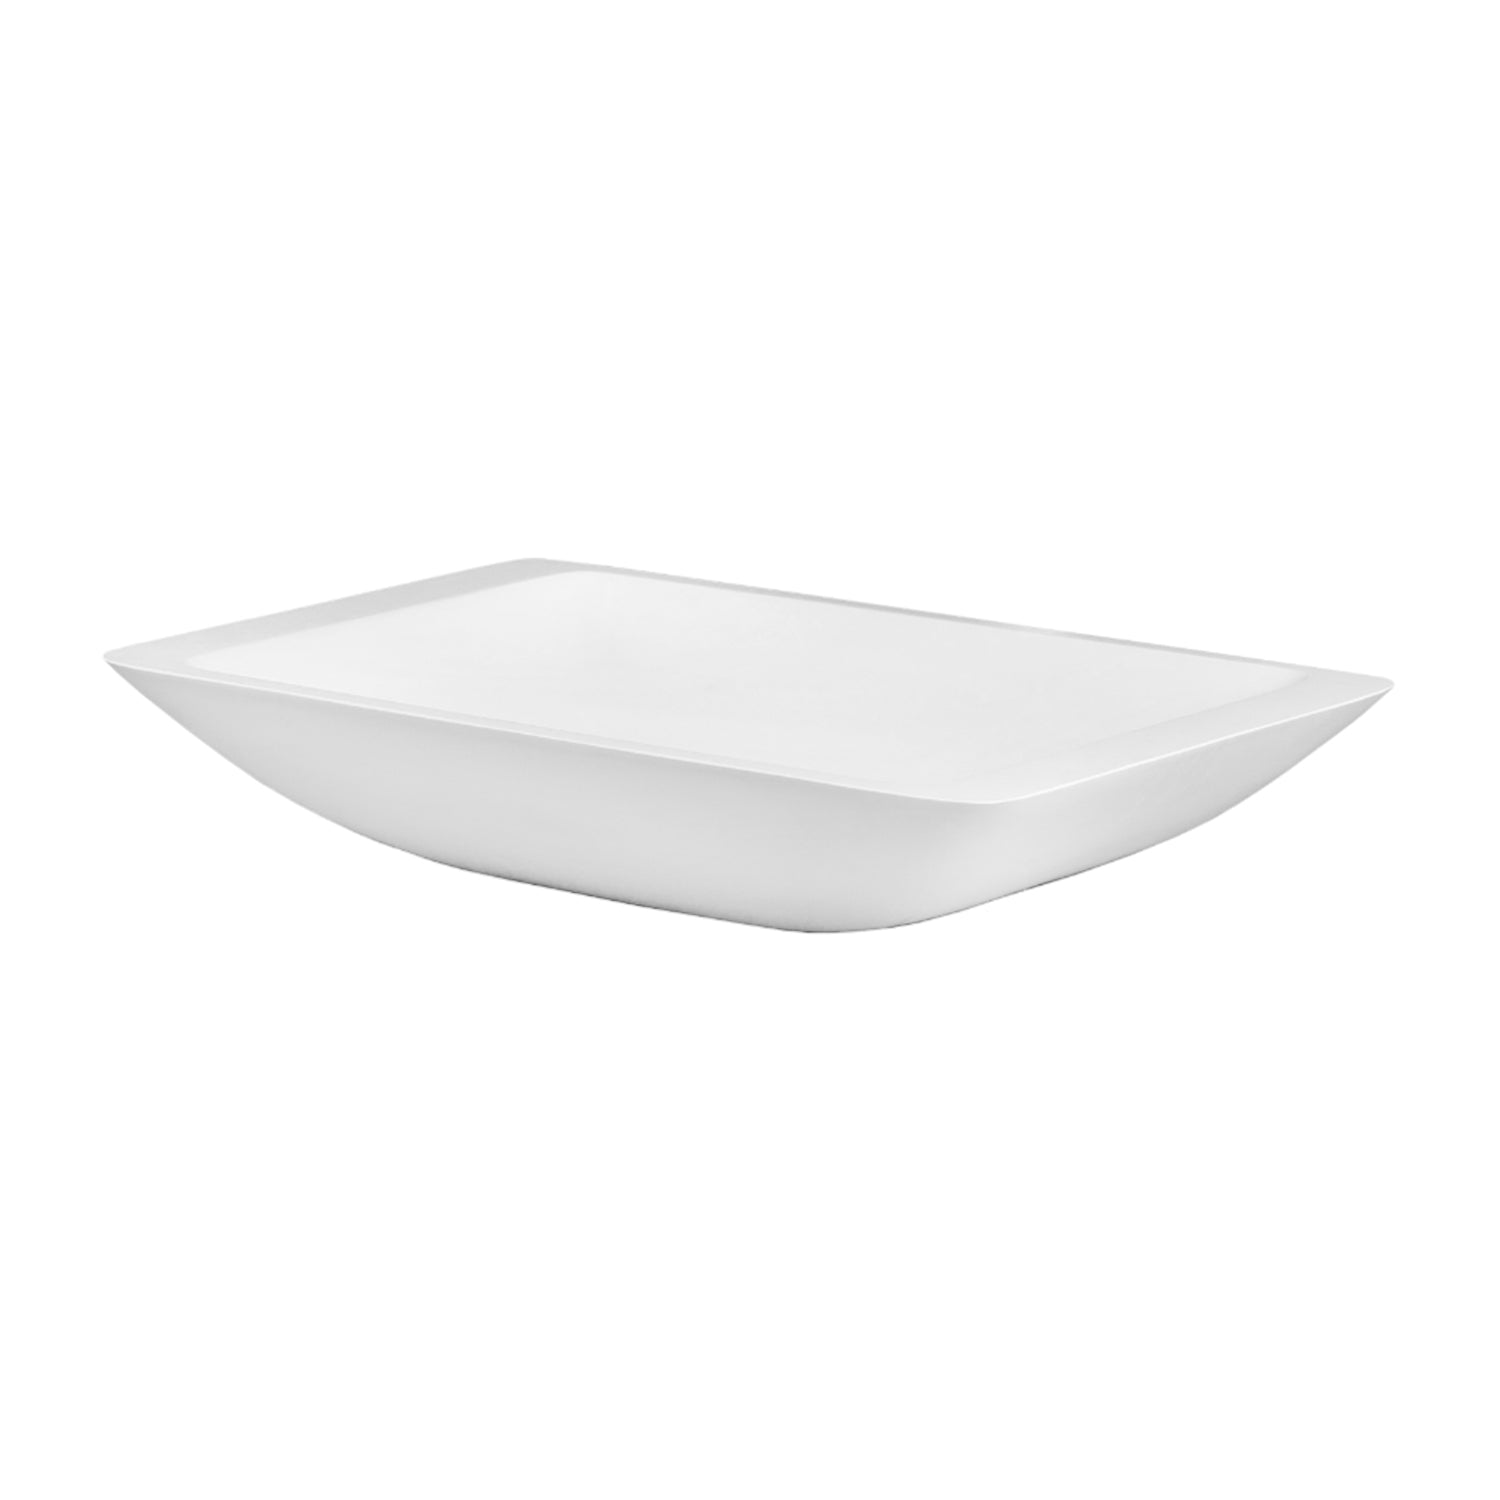 DAX Lavabo rectangular de superficie sólida para baño de un solo tazón, acabado blanco mate, 22-7/8 x 13-3/8 x 4 pulgadas (DAX-AB-1321)